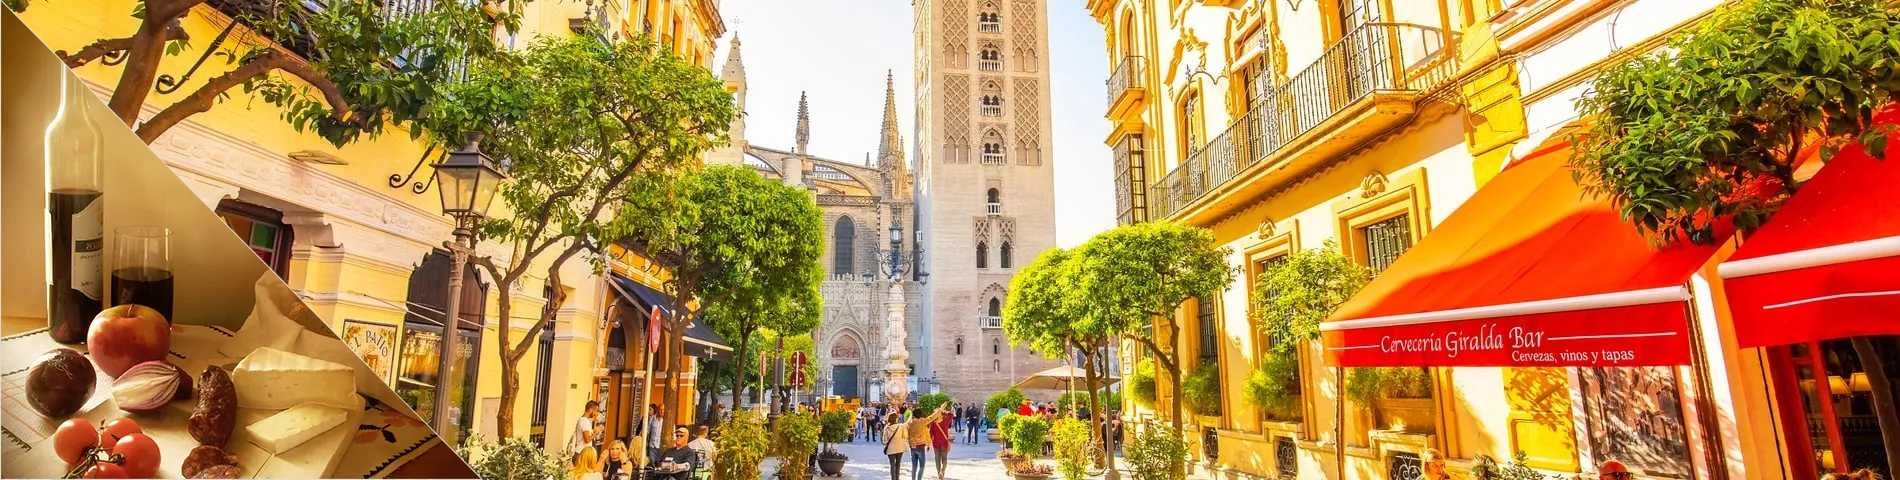 Sevilla - Spansk & Kultur